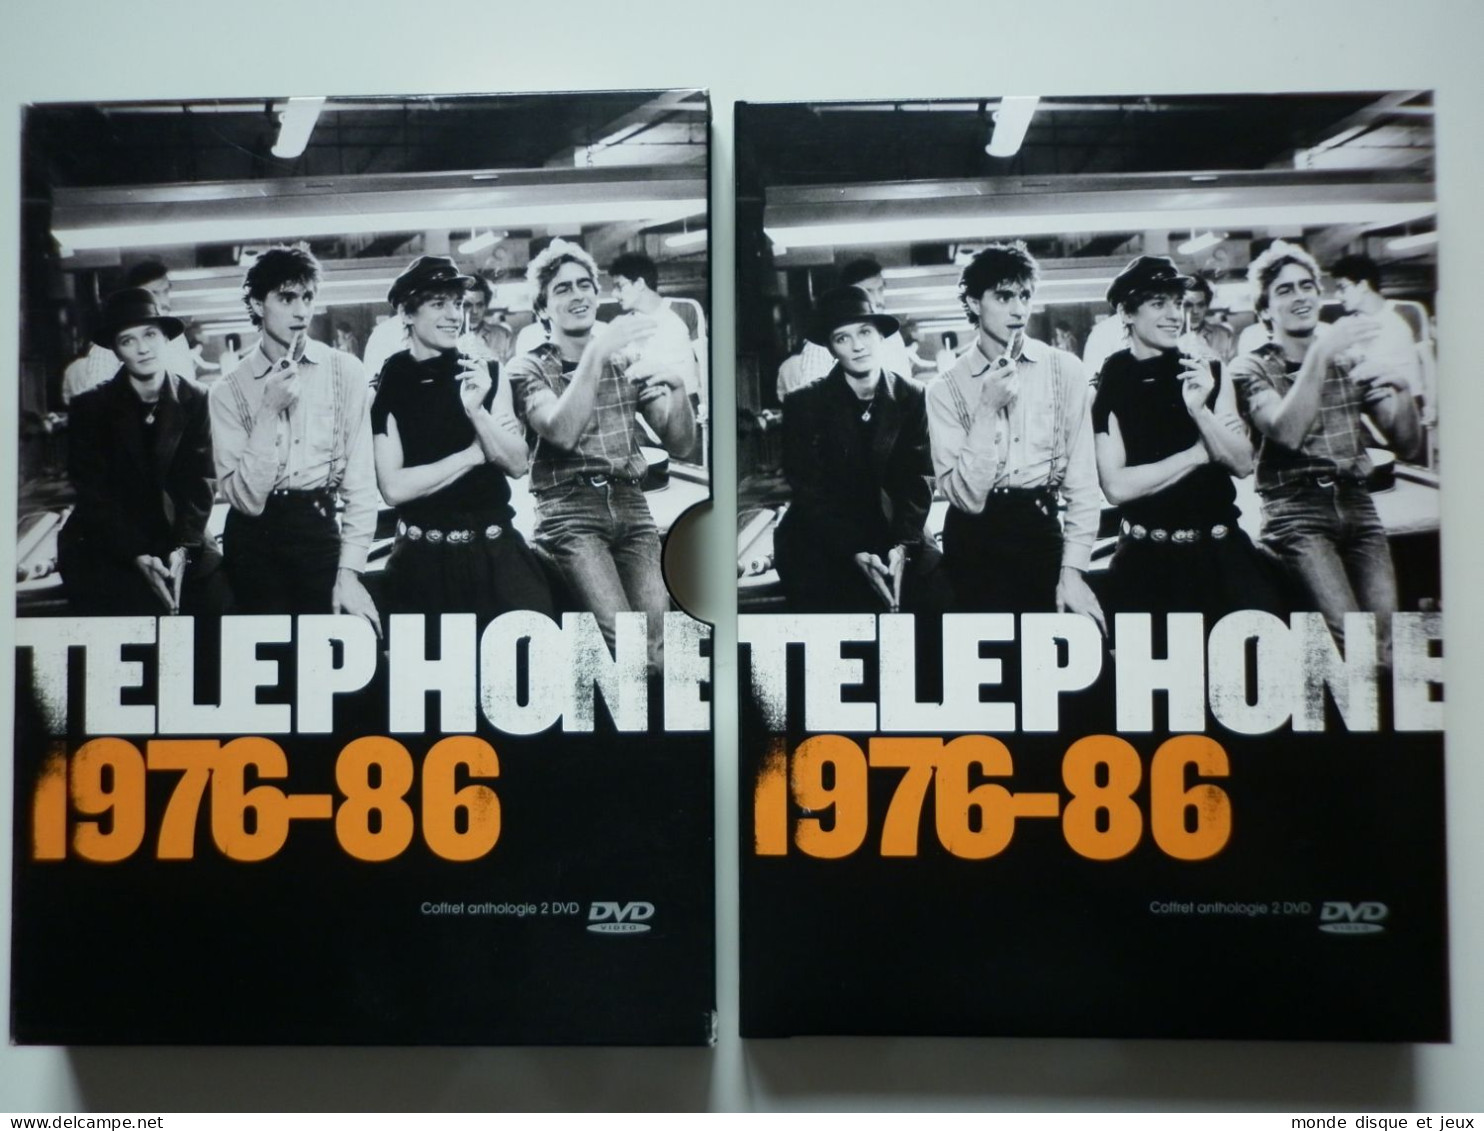 Téléphone Double DVD Digipack 1976-86 - DVD Musicaux